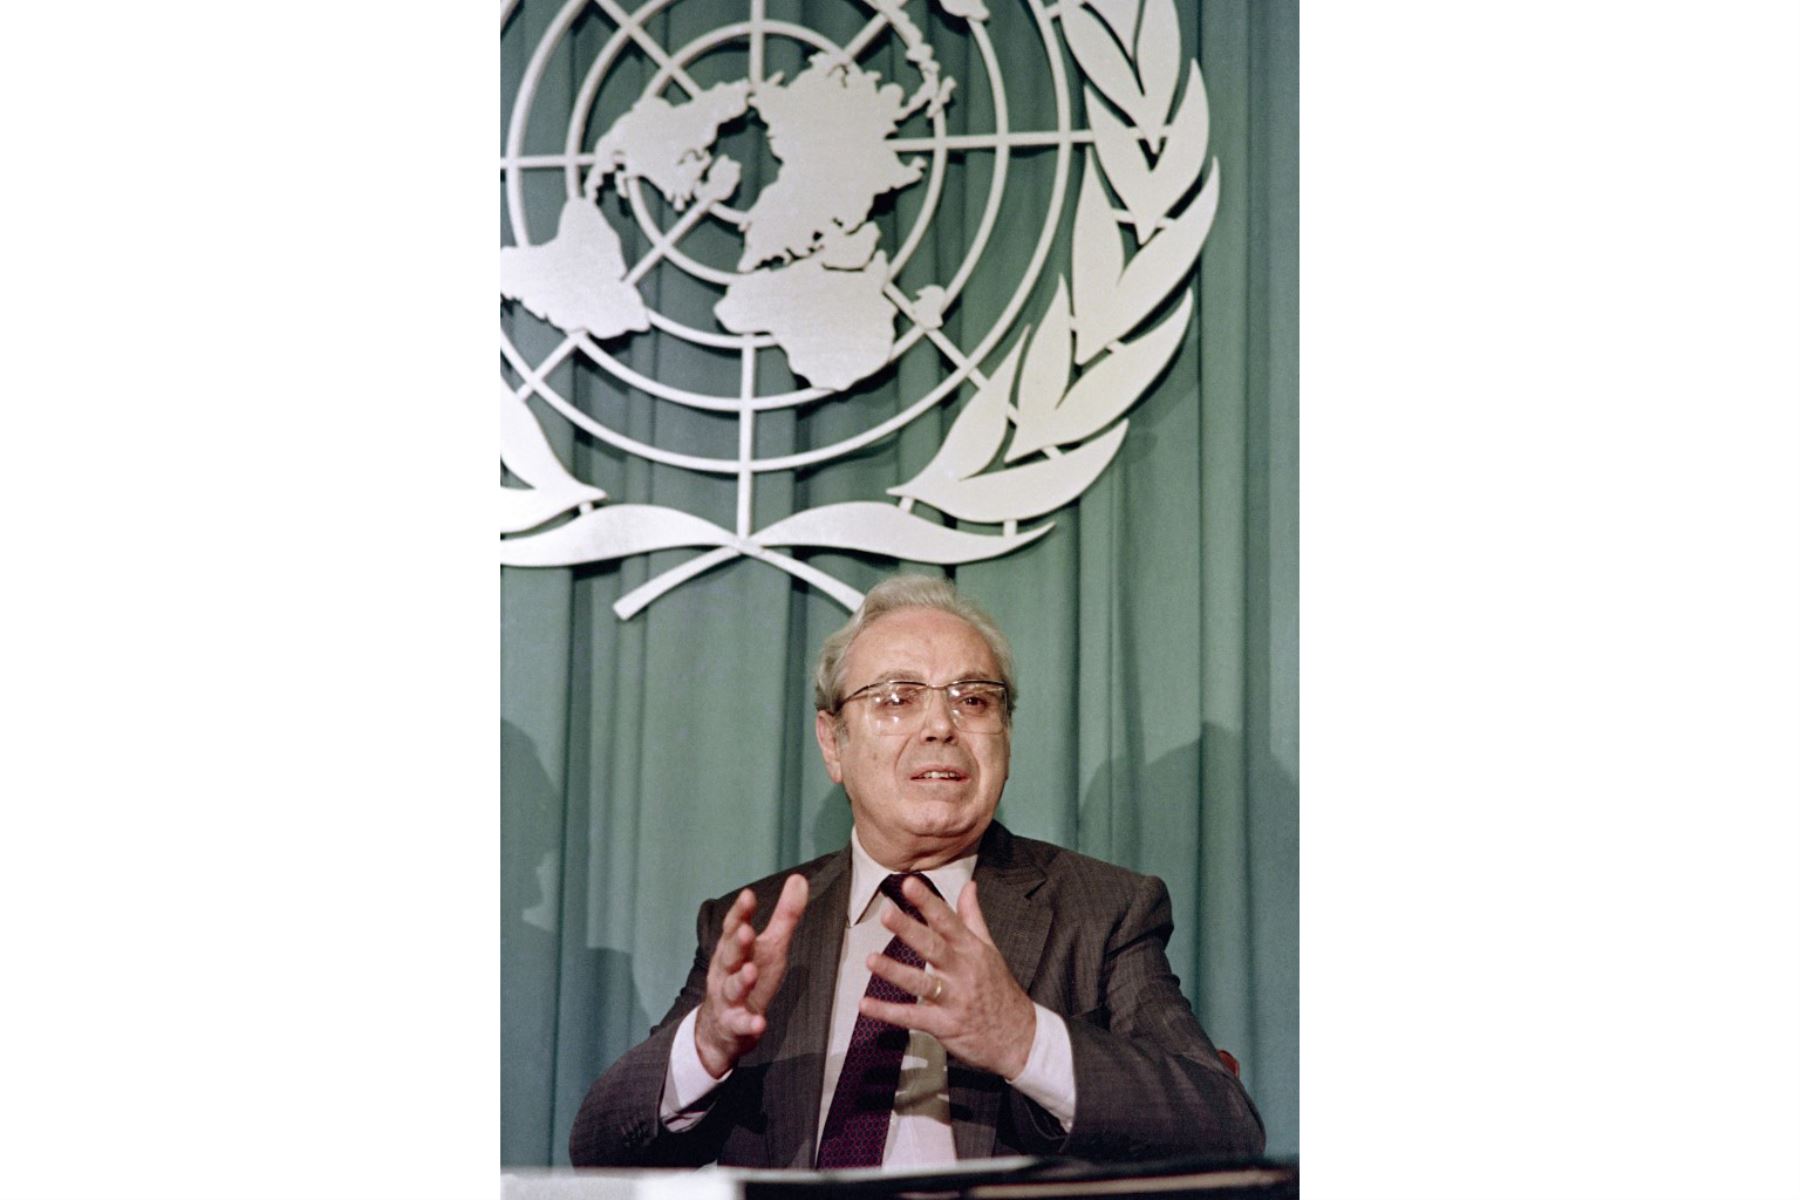 El secretario general de la ONU, Javier Pérez de Cuéllar, dijo a los reporteros en una conferencia de prensa que Irán había acordado incondicionalmente un alto el fuego en la guerra de casi ocho años entre Irán e Irak el 18 de julio de 1988, en una sesión informativa en la sede de la ONU en Nueva York. Foto: AFP